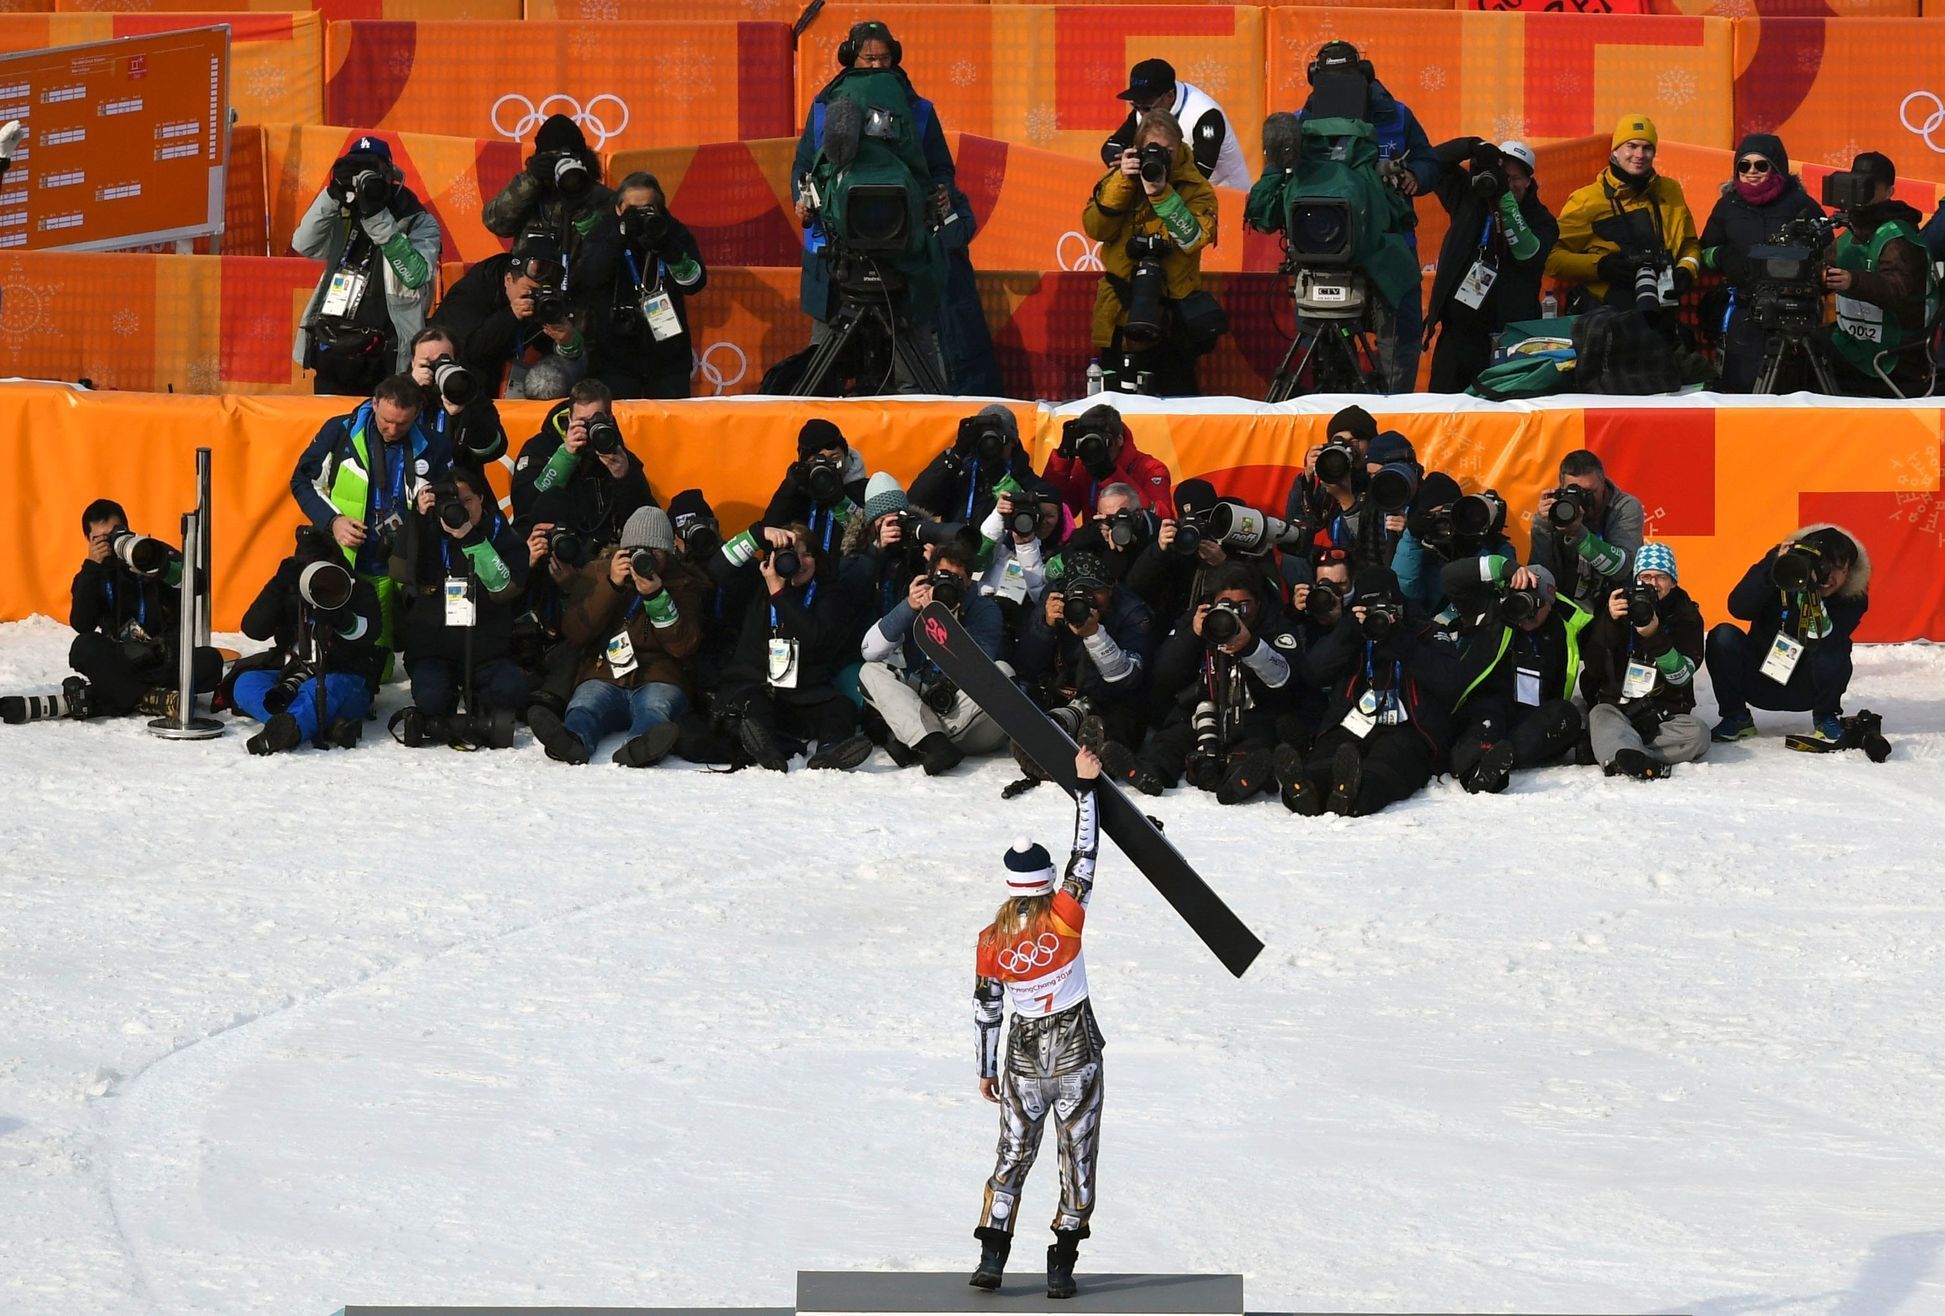 Ester Ledecká slaví zlato z paralelního obřího slalomu na ZOH 2018